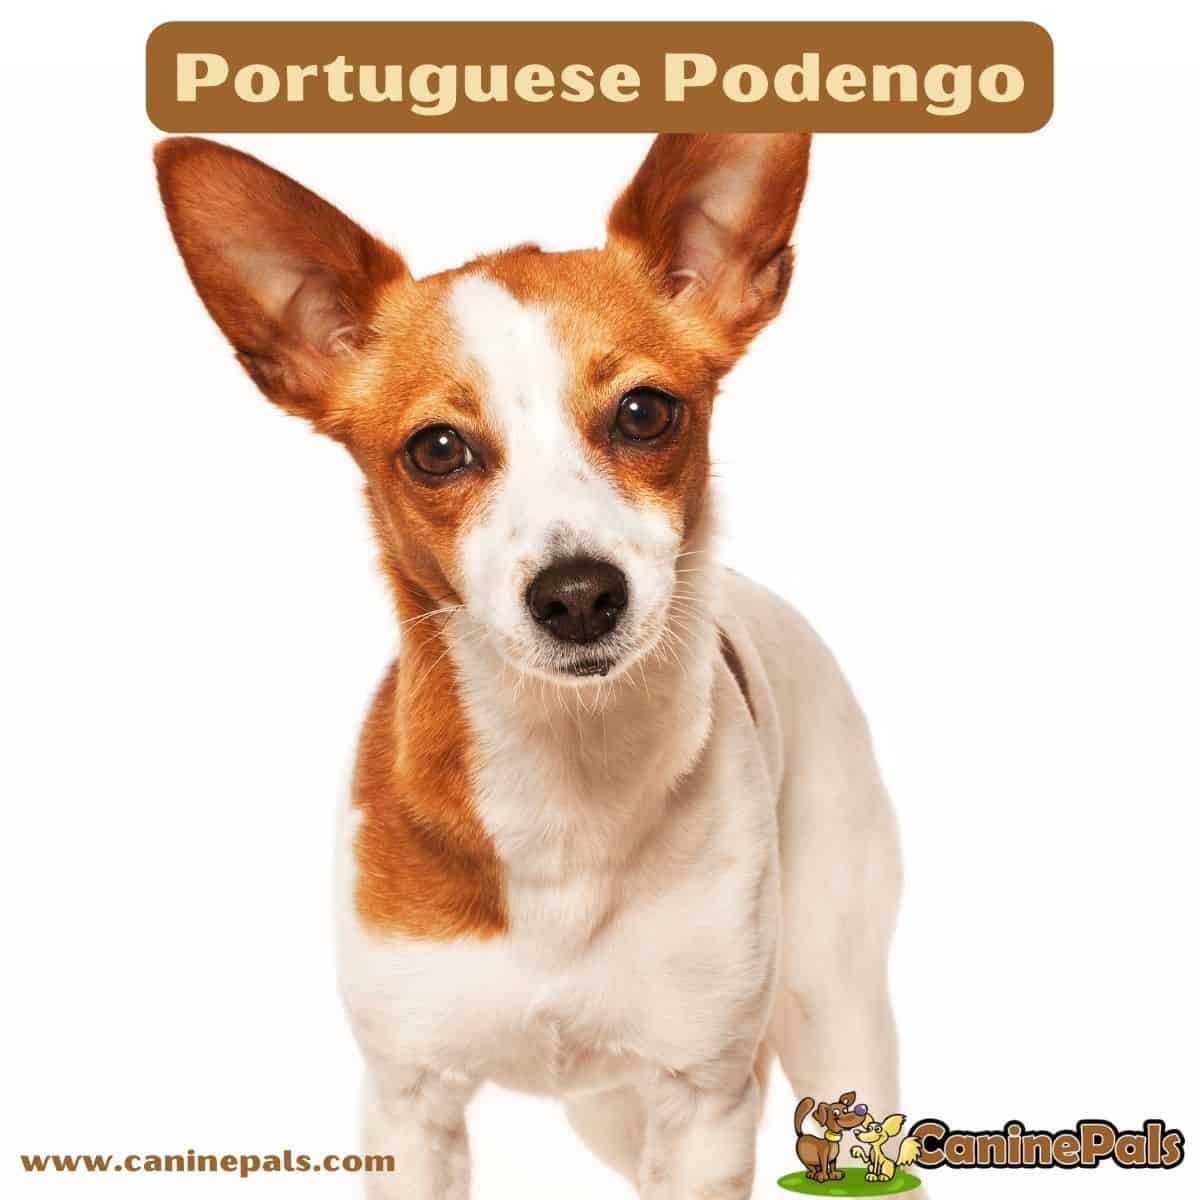 Portuguese Podengo